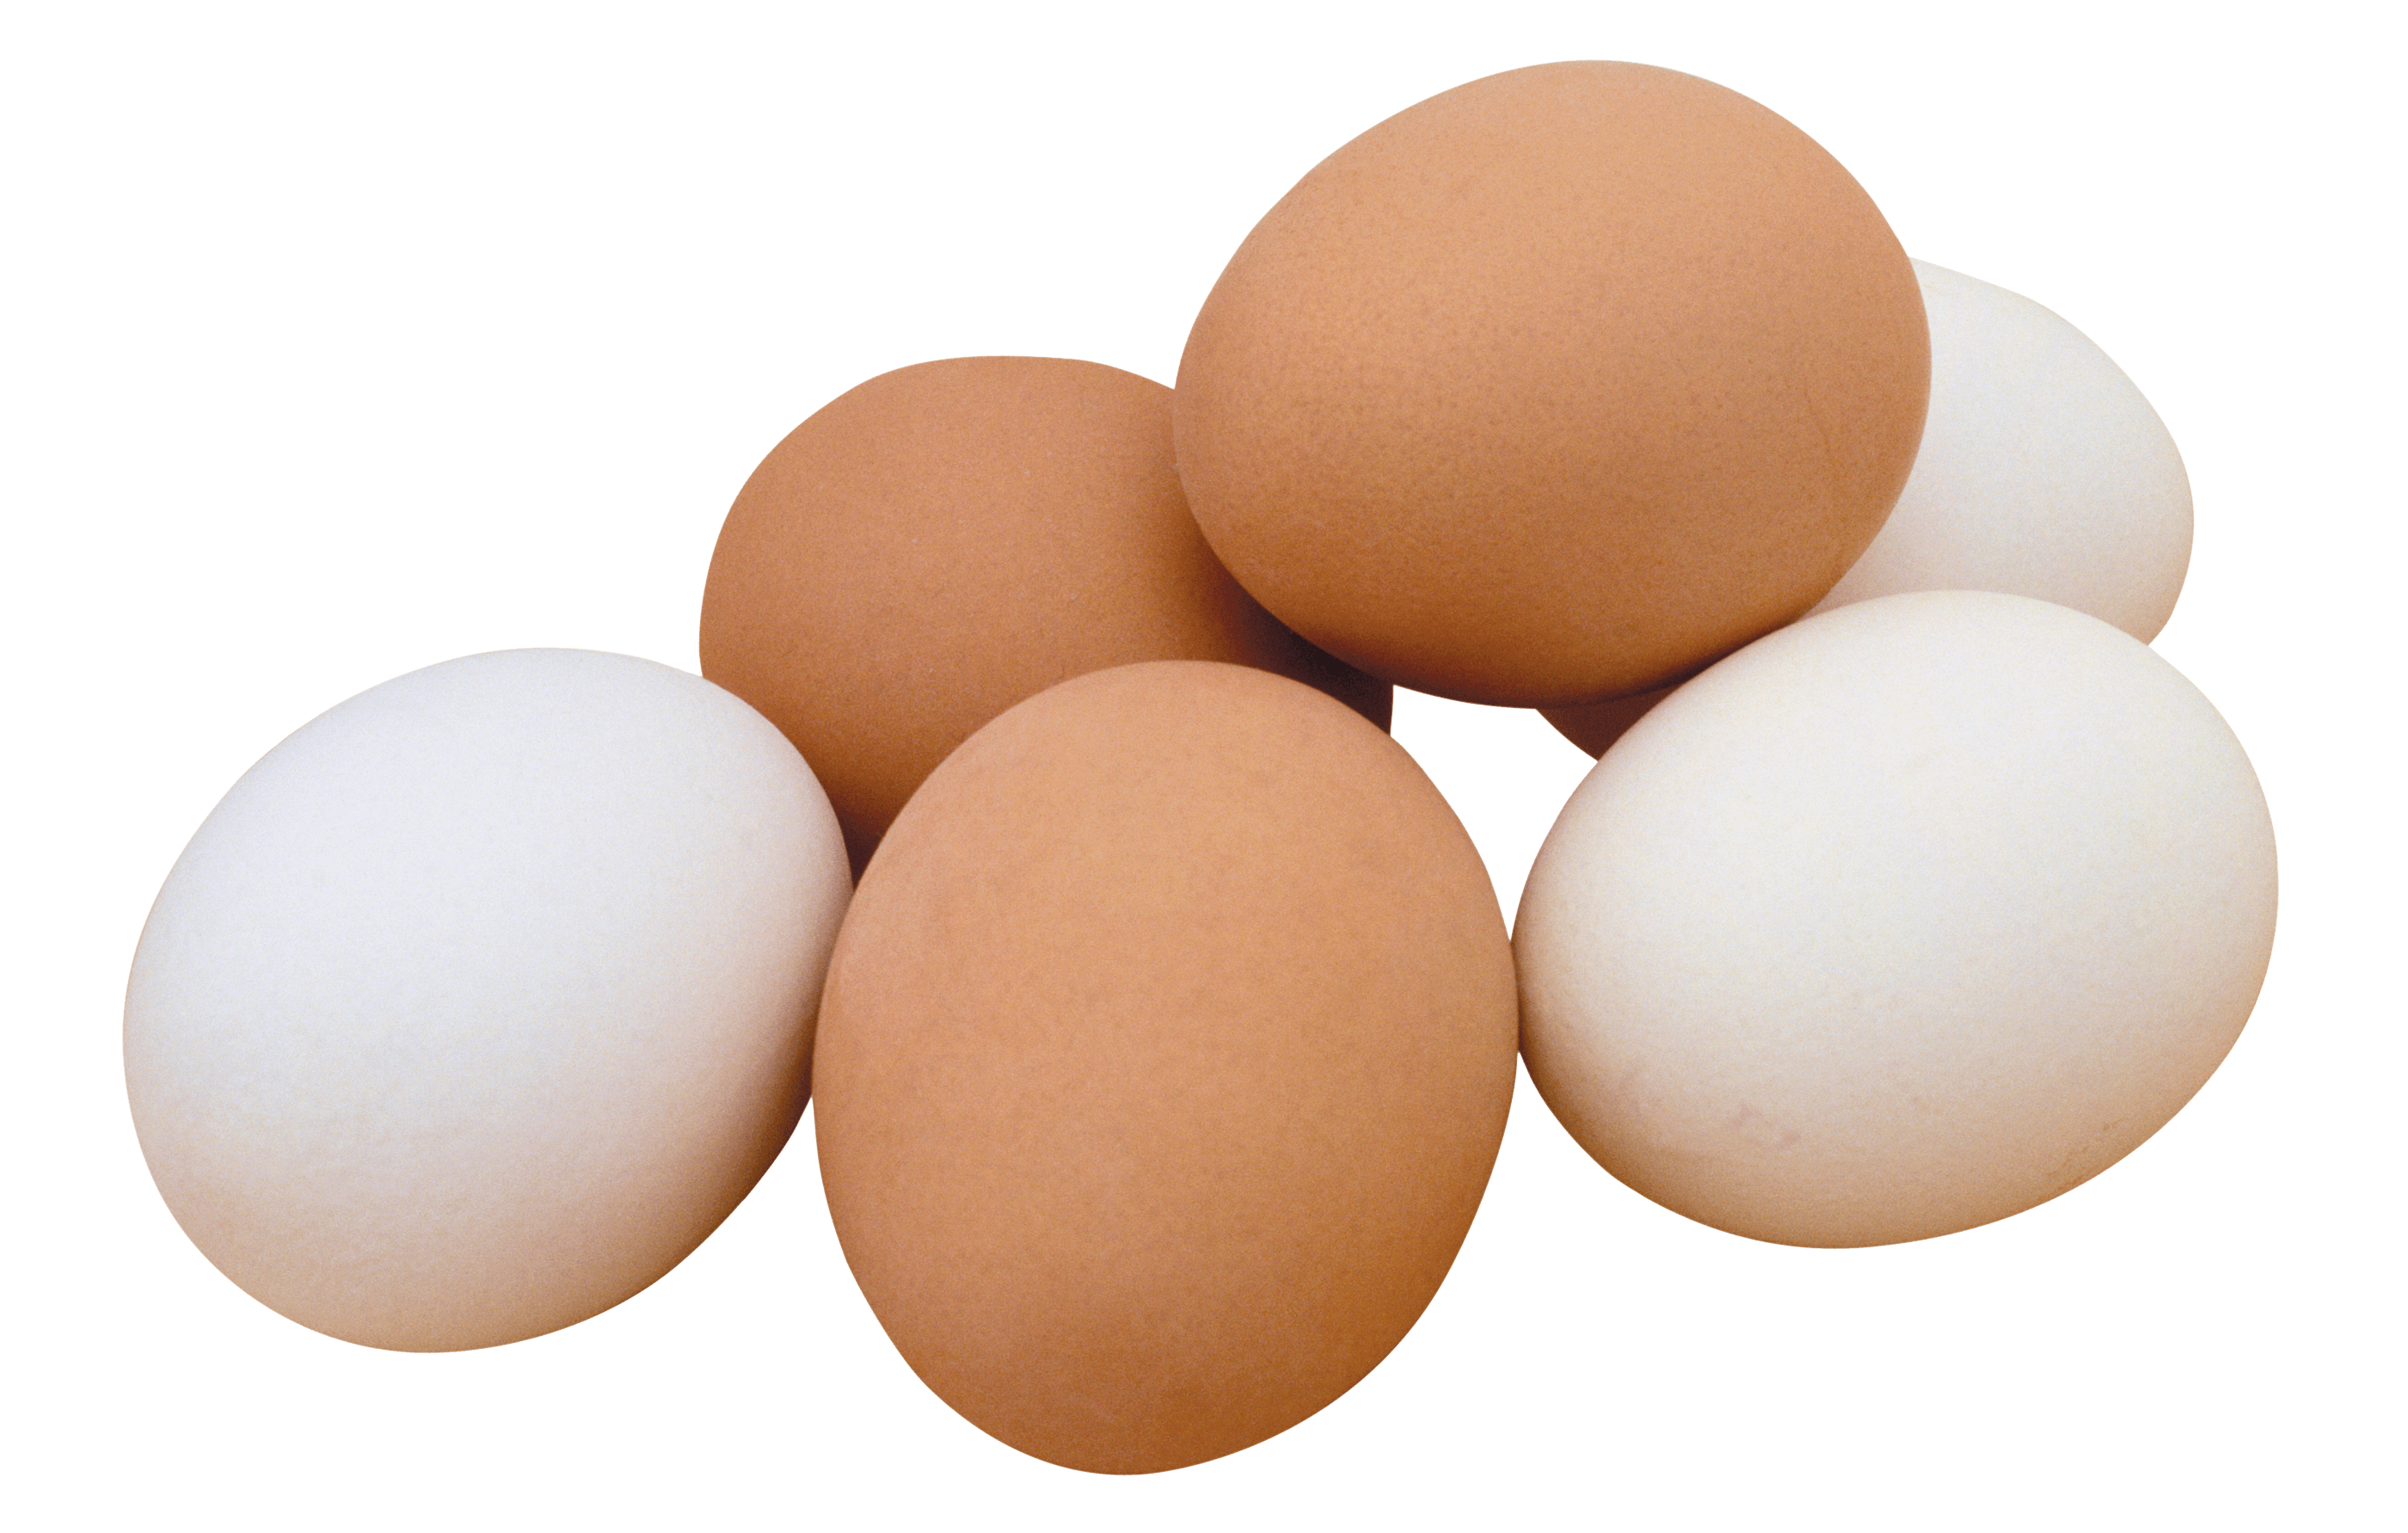 कुछ अंडे